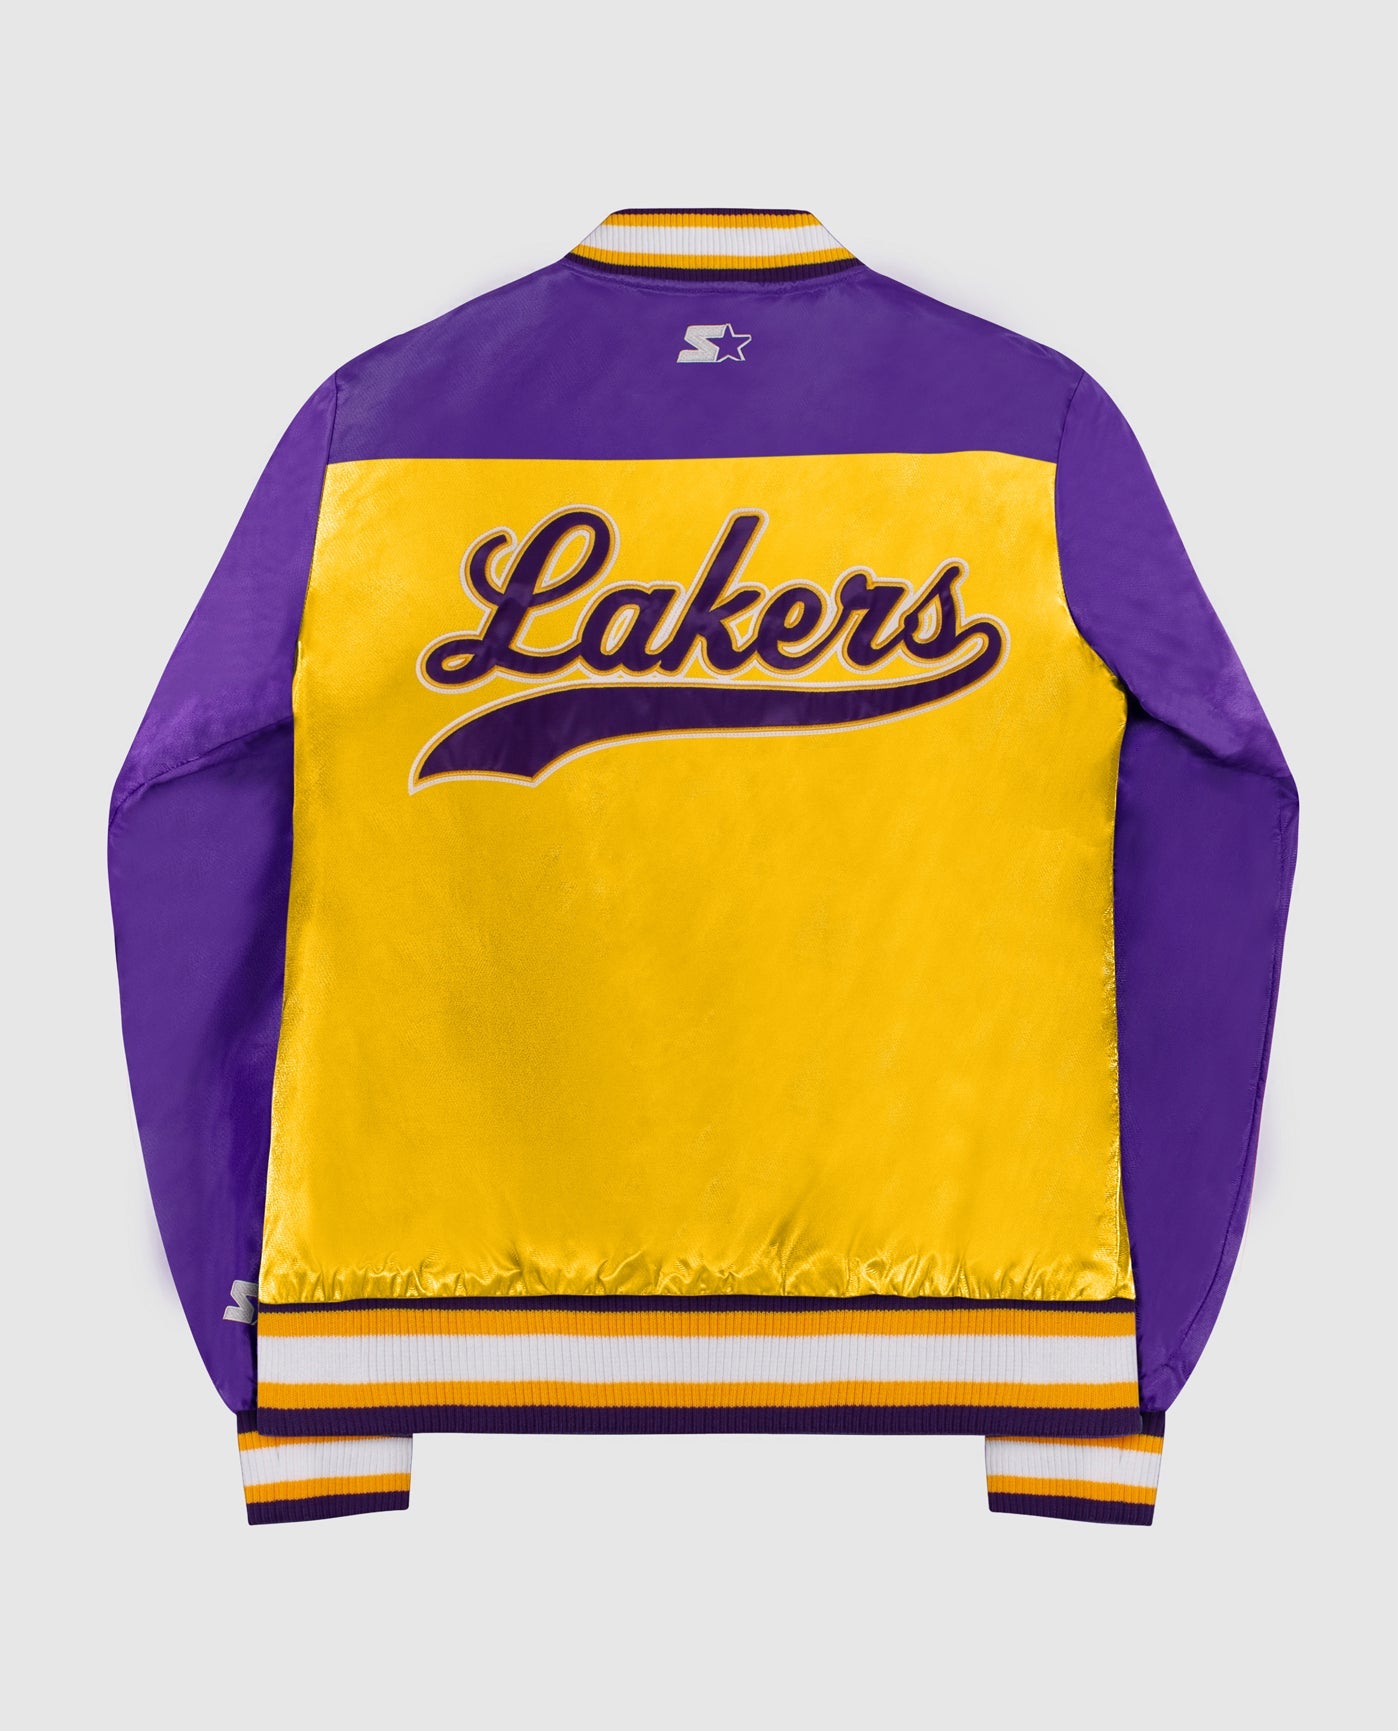 Vintage Los Angeles Kings Purple Varsity Jacket